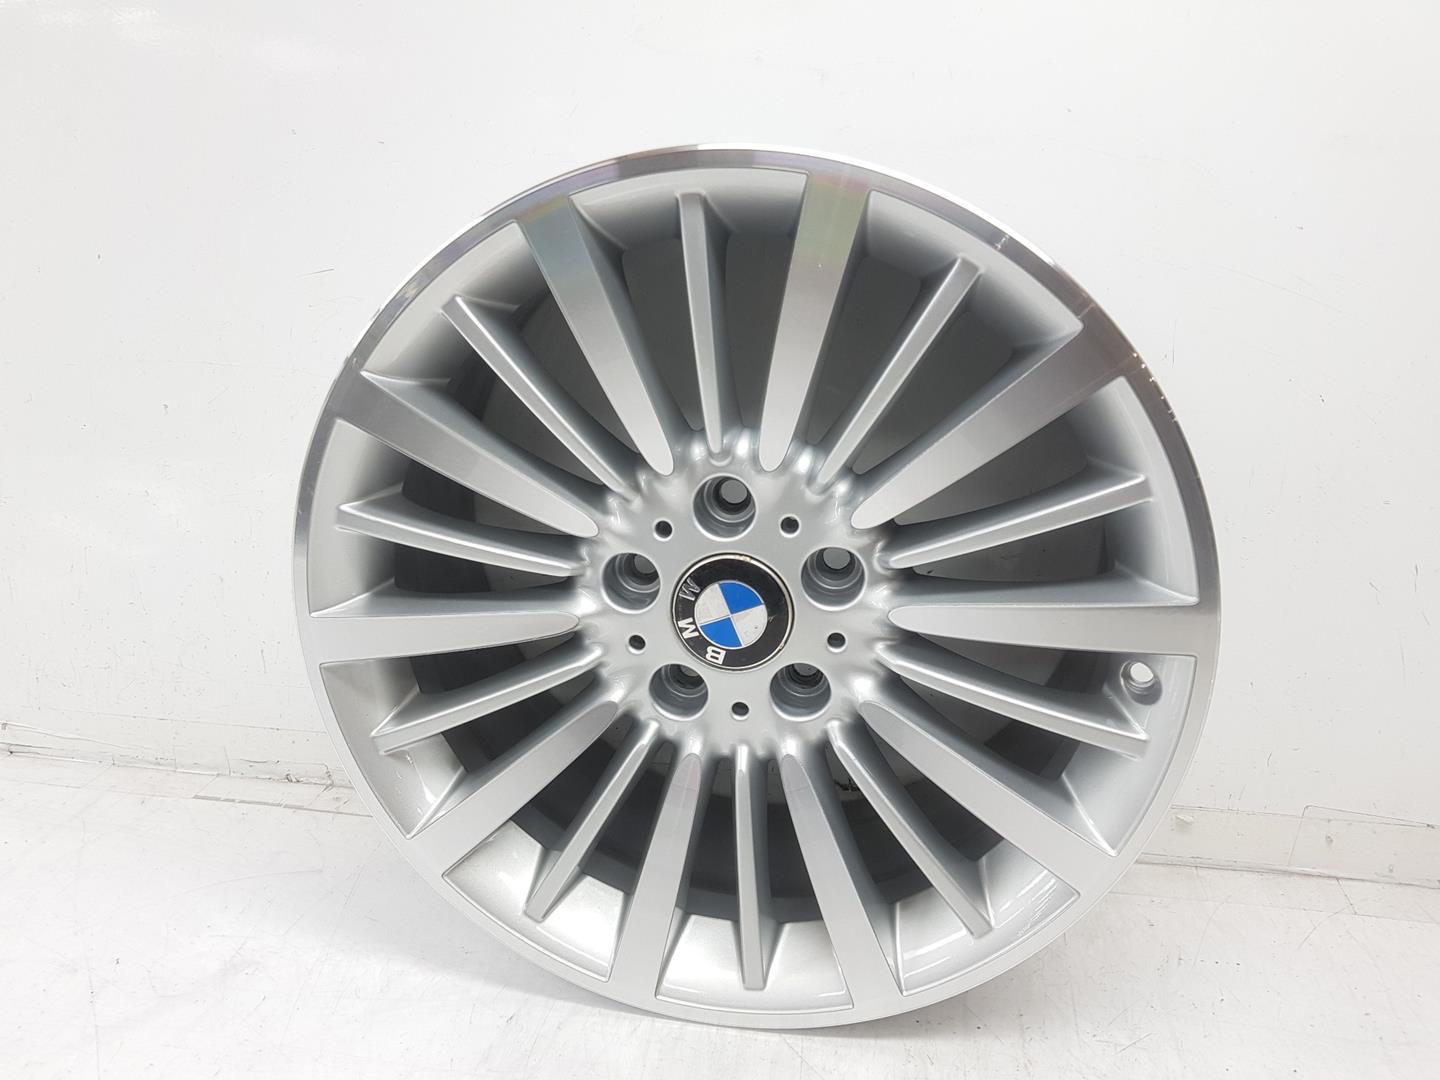 BMW 4 Series F32/F33/F36 (2013-2020) Wheel 36116796249, 8JX18, 18PULGADAS 24208587